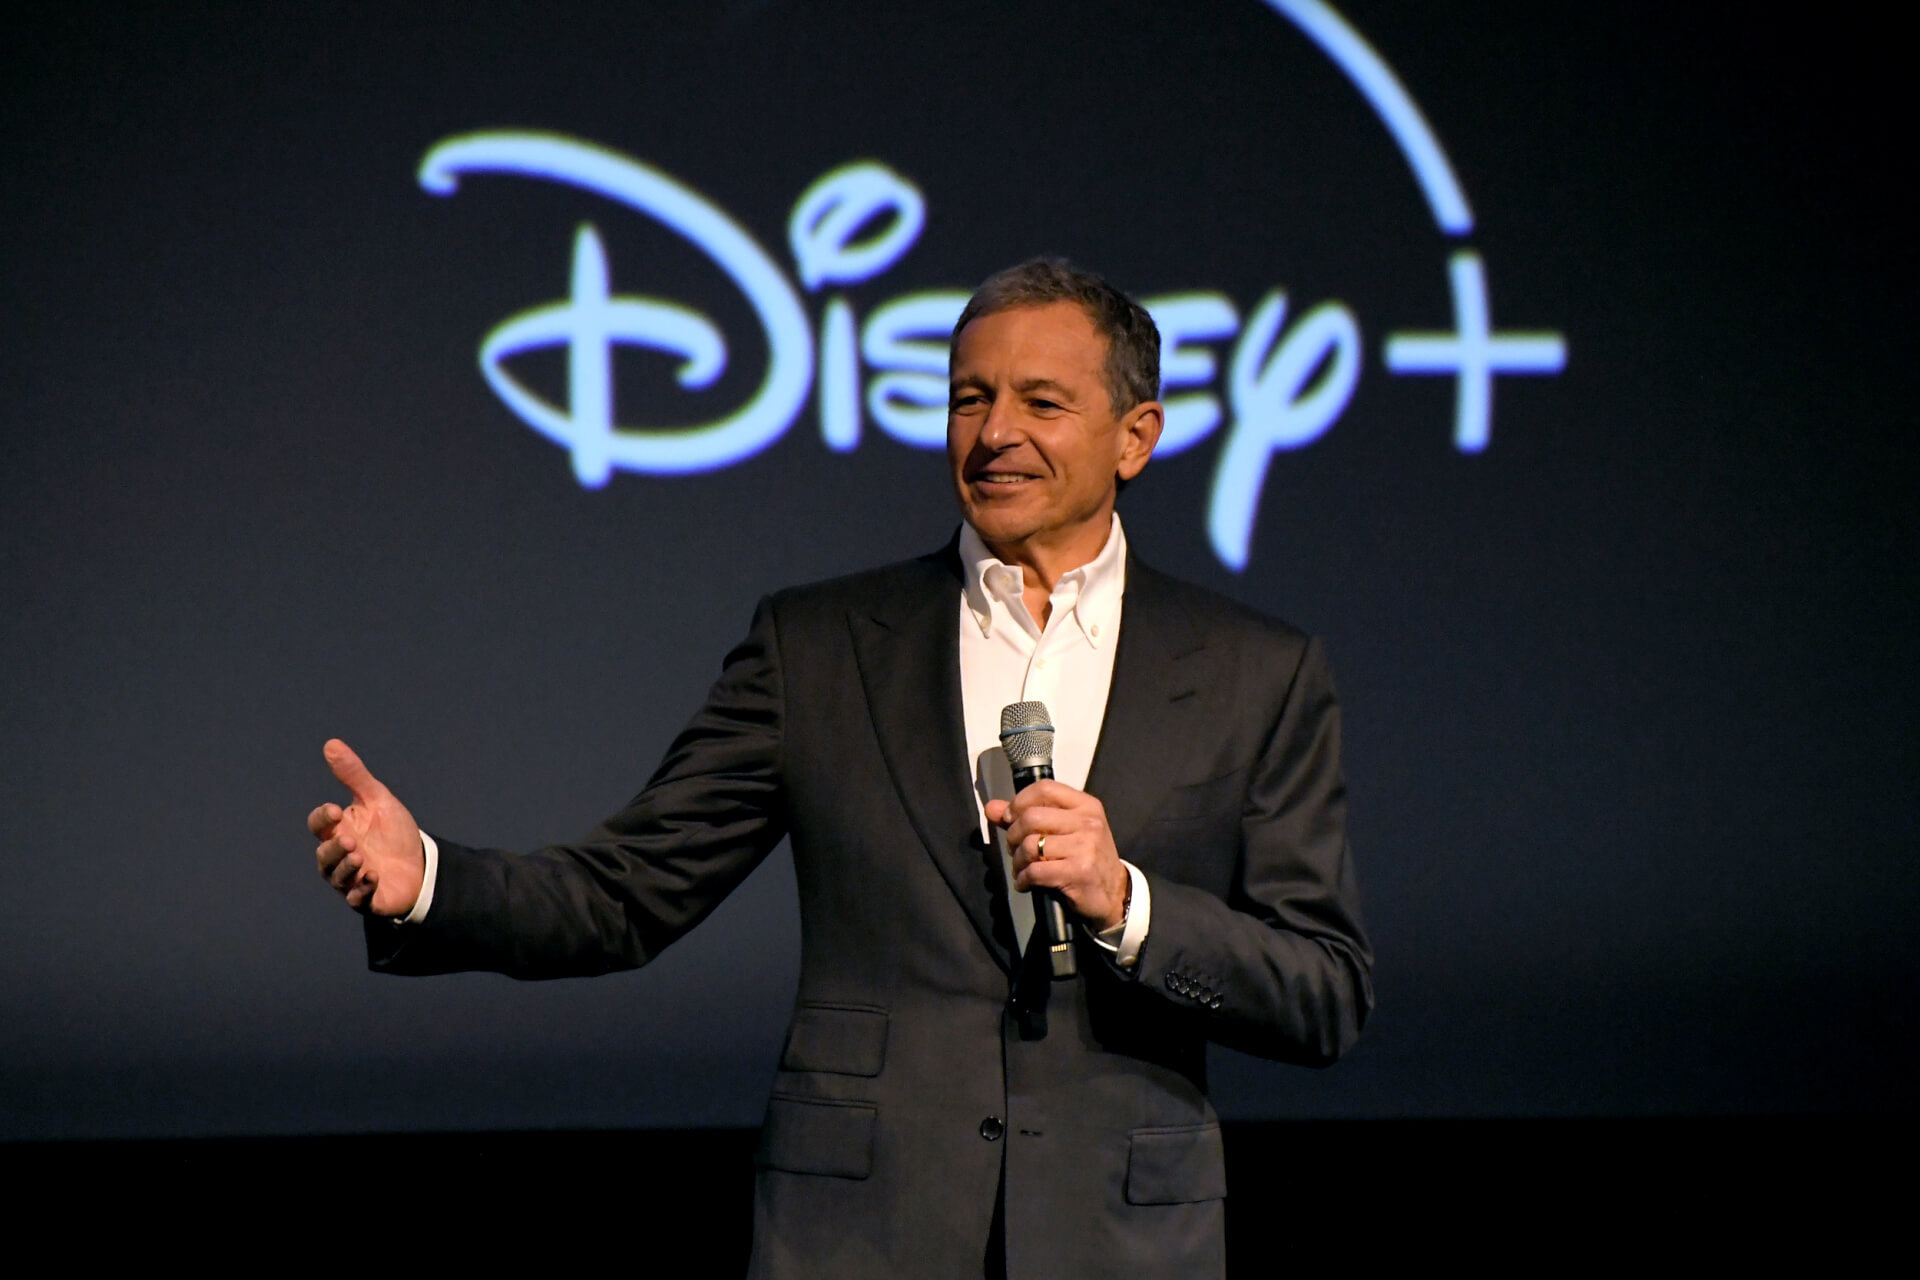 Bob Iger visszatér a Disney vezérigazgatói posztjára, Bob Chapek távozik